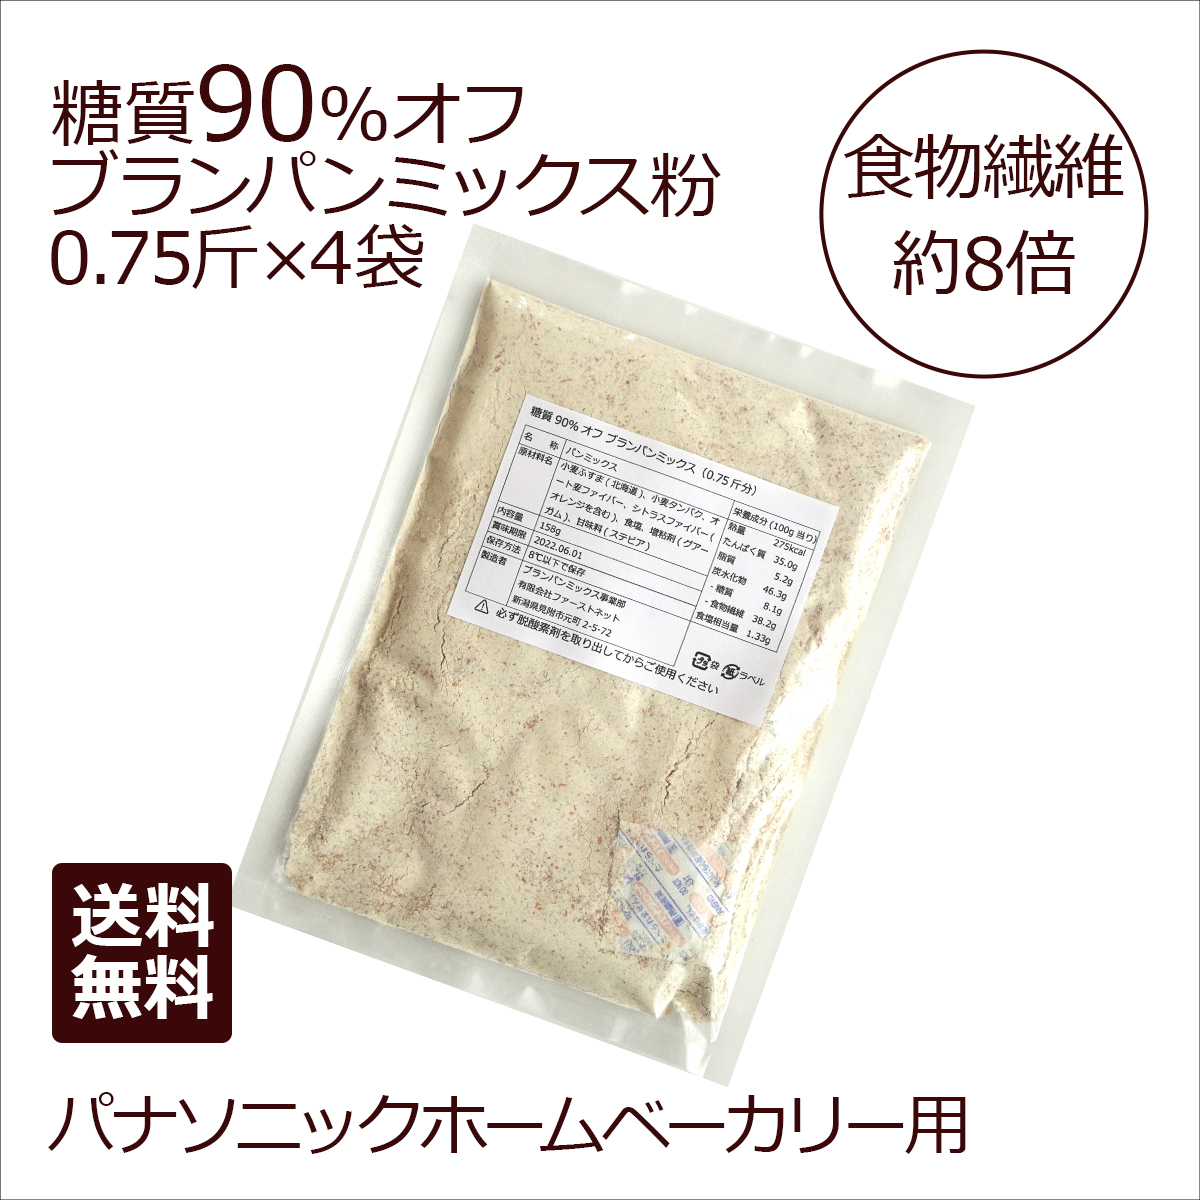 糖質90%オフ ブランパンミックス 4袋販売価格：1,320円(税込,送料込) | ブランパンミックスドットコム